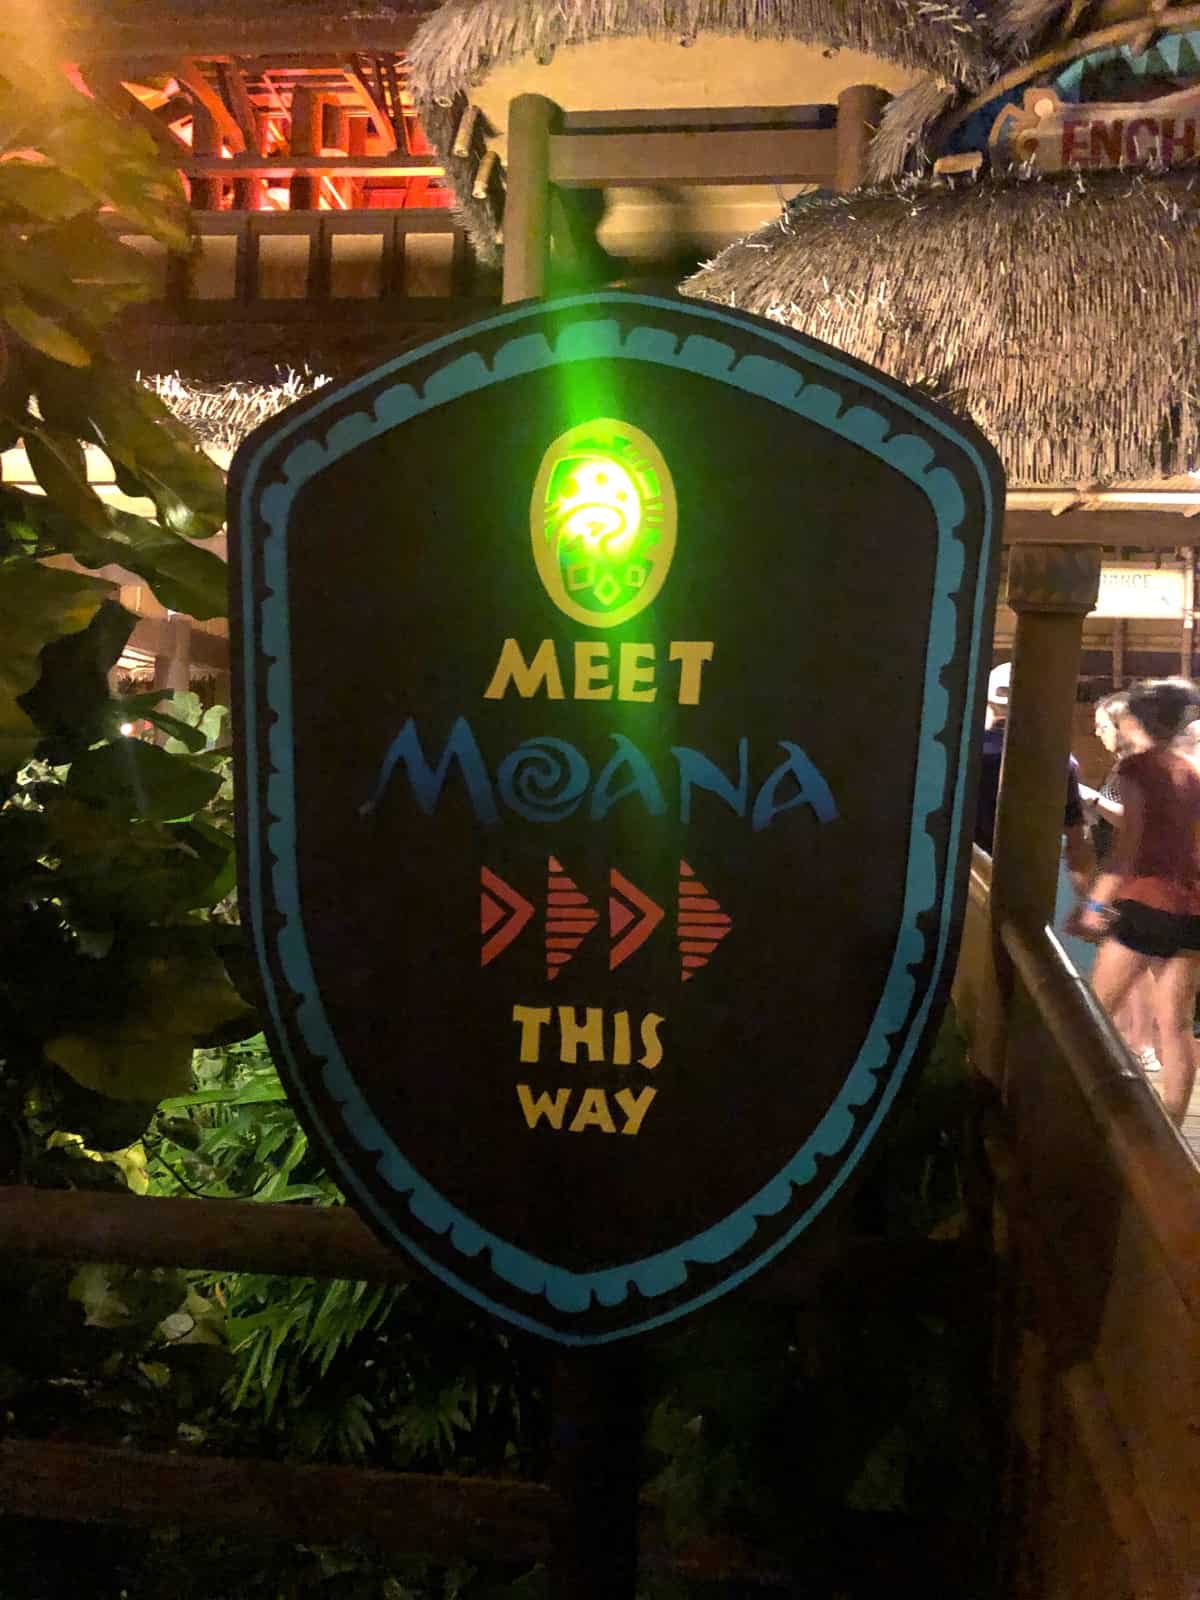 Where to meet Moana at Disney World